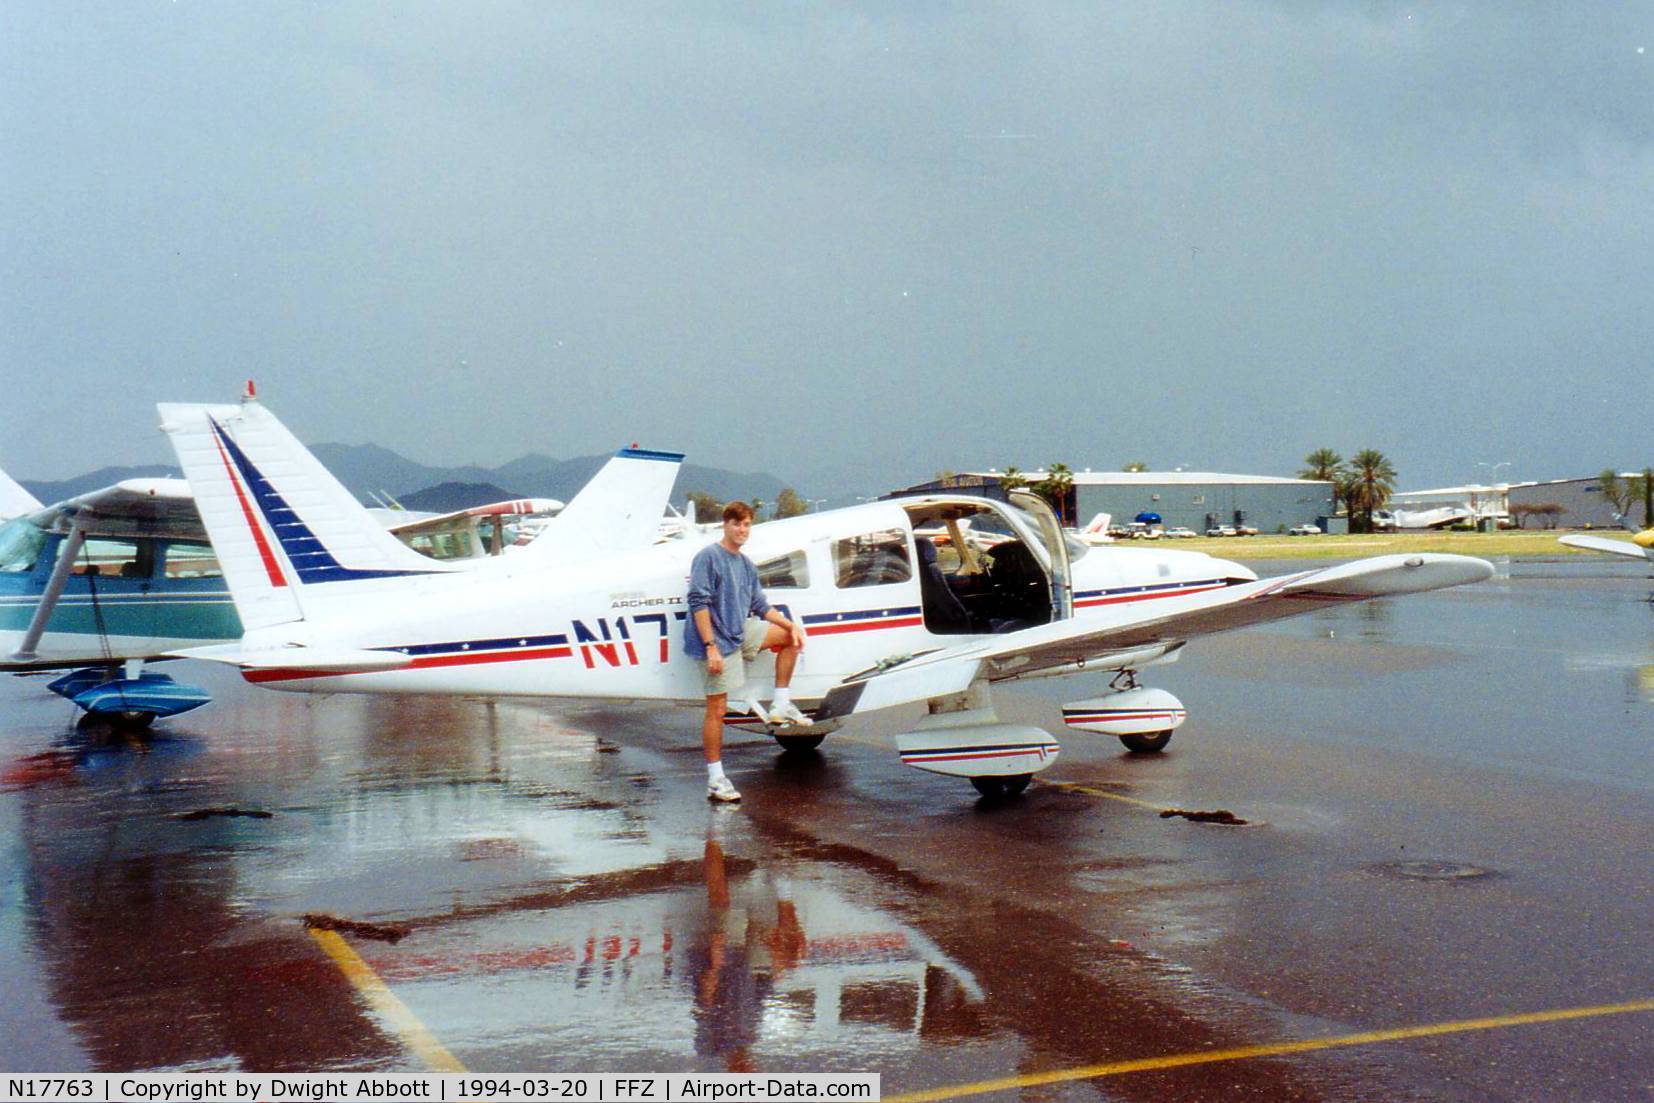 N17763, 1979 Piper PA-28-181 C/N 28-8090179, 1979 Piper Archer II PA-28-181